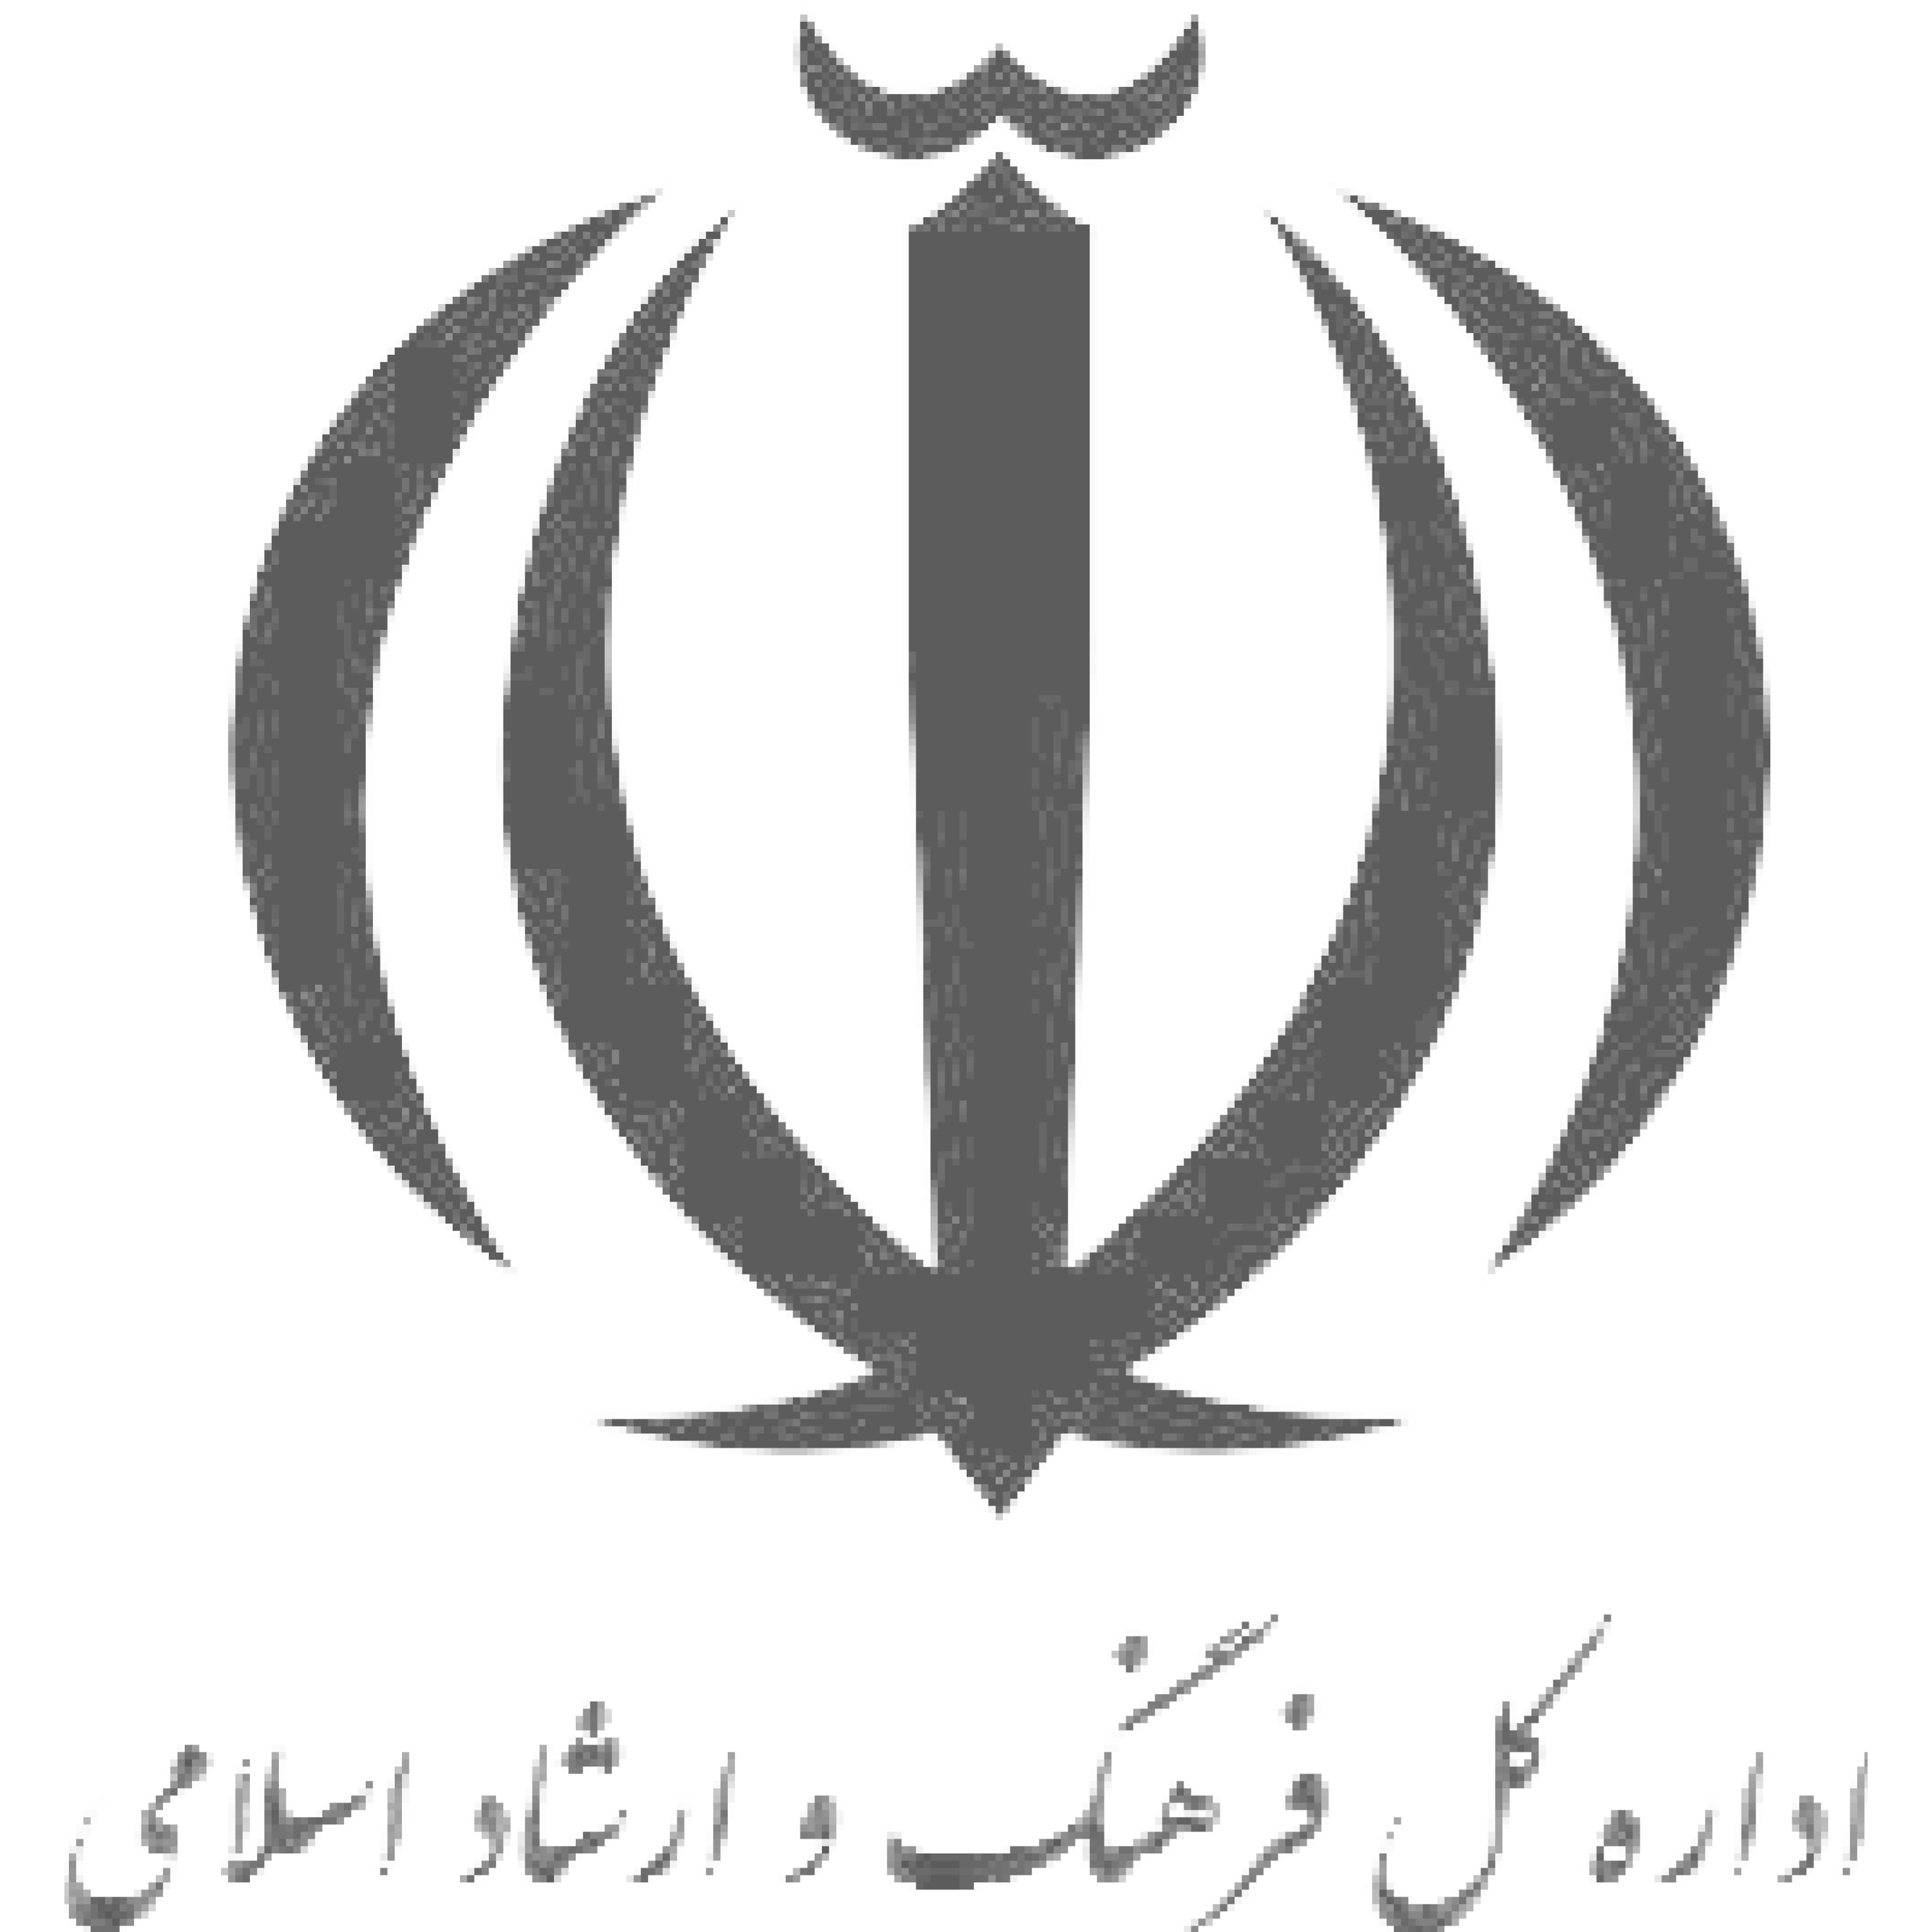 اداره فرهنگ وارشاد اسلامی شهرستان فراشبند به جمع مشتریان دیجی فرم پیوست